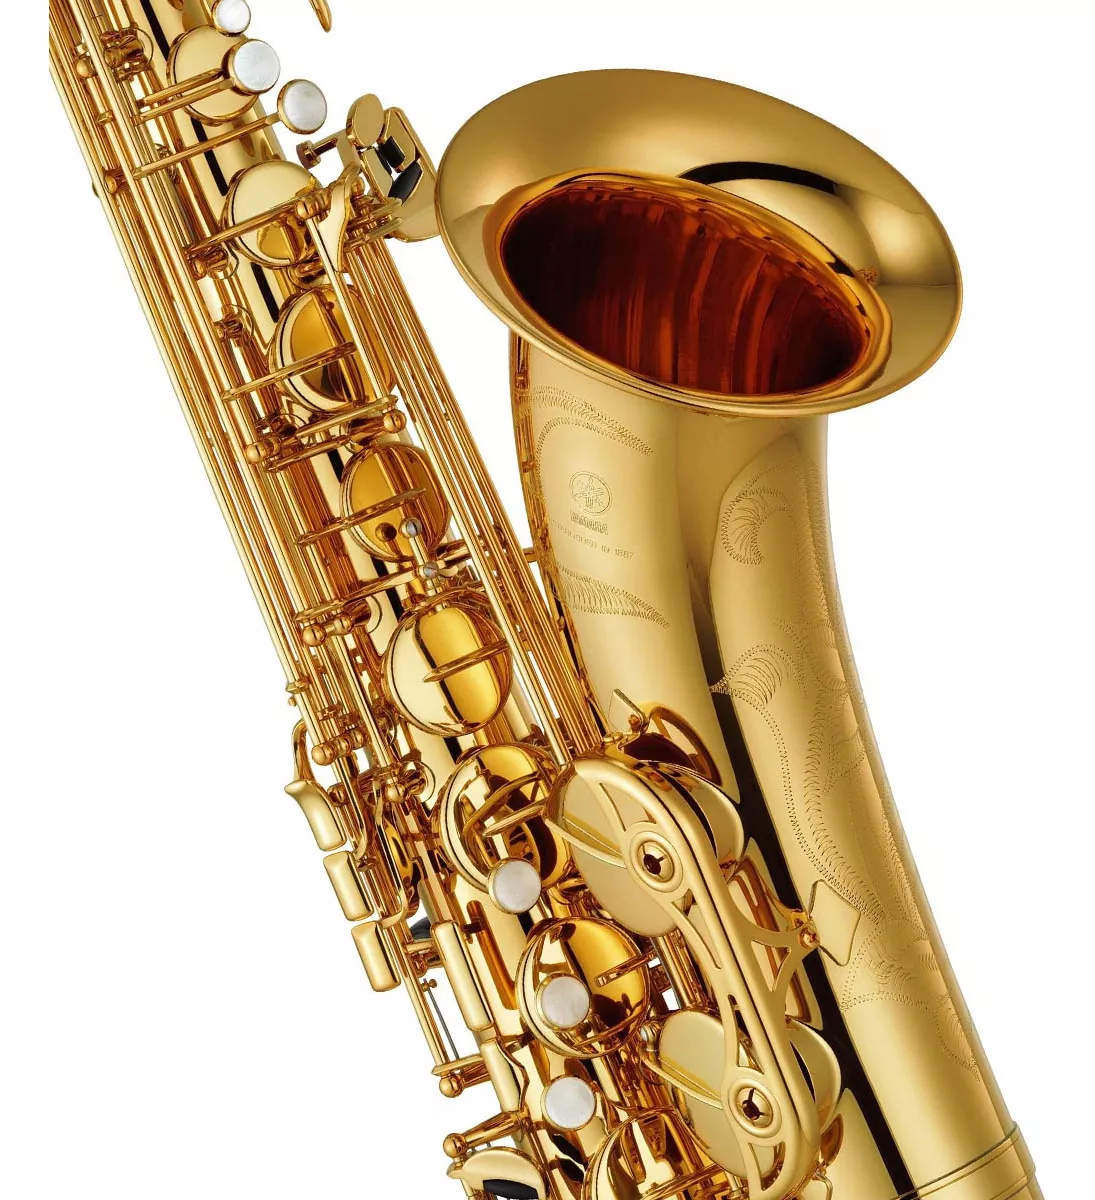 Tercera imagen para búsqueda de saxofon yamaha yas 23